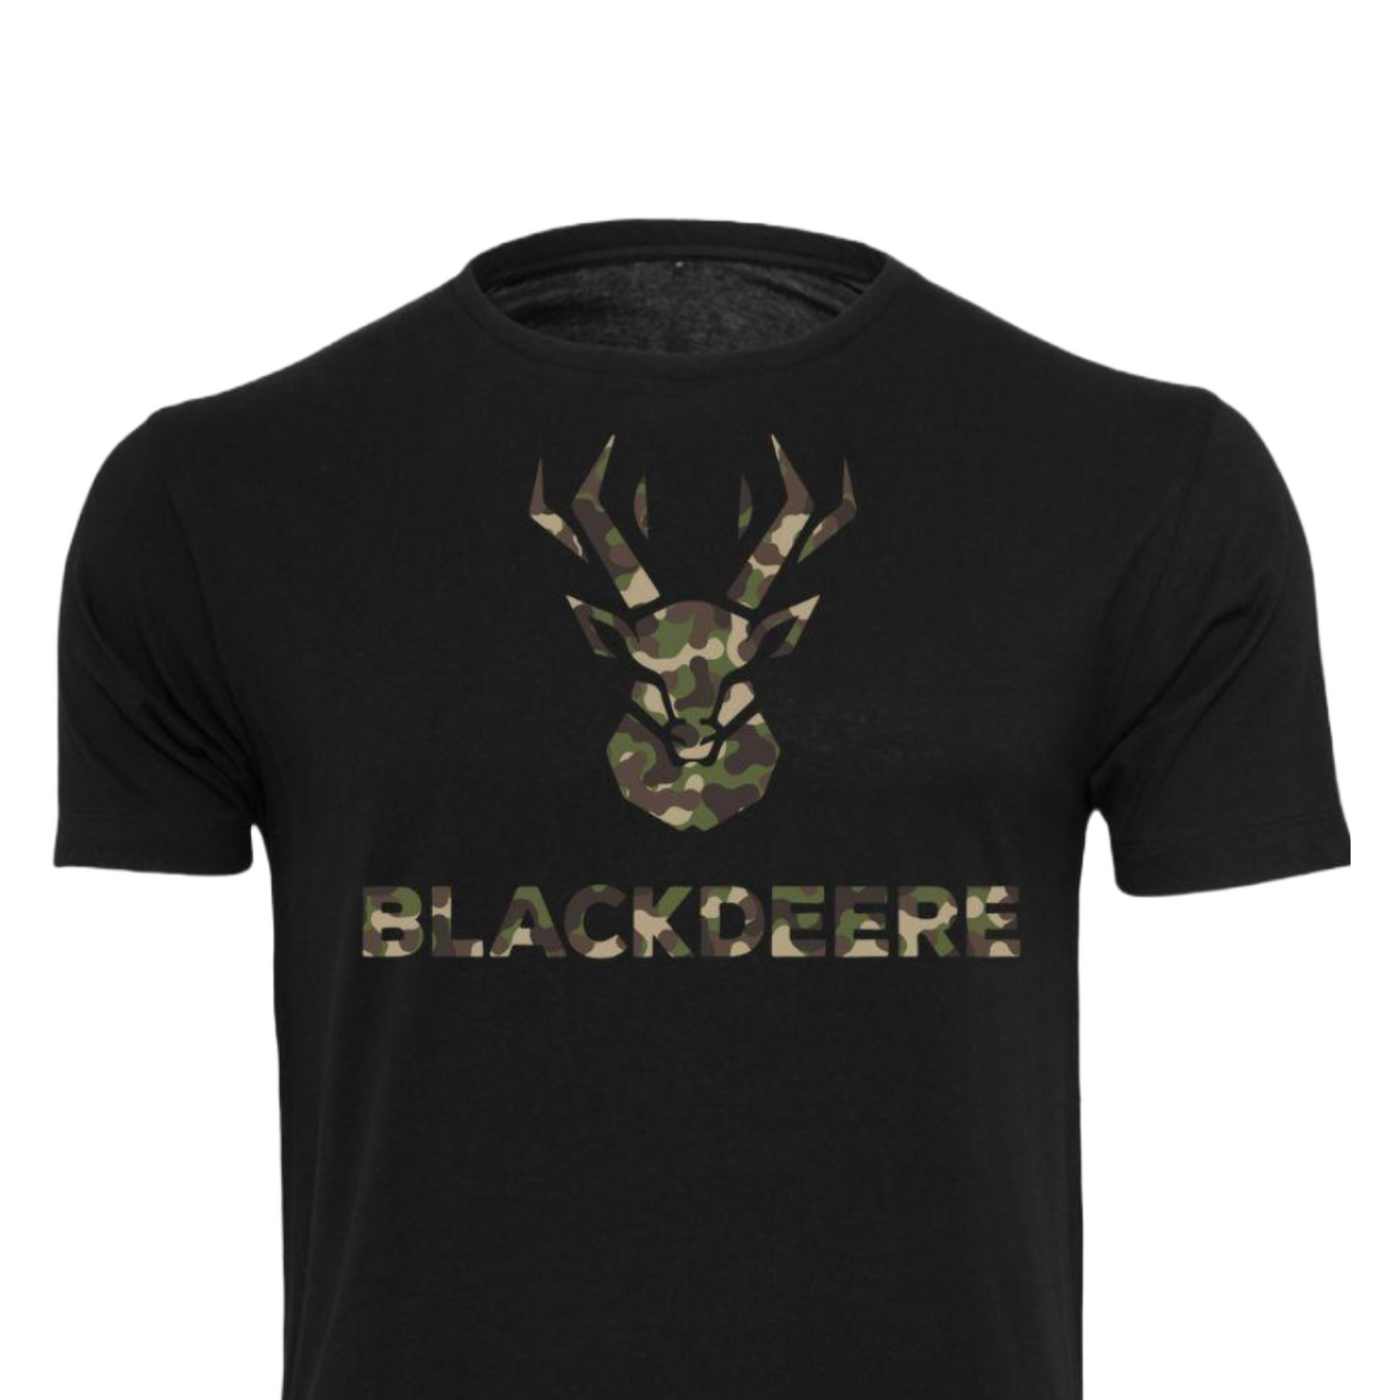 Blackdeere-Man-T-Shirt-2